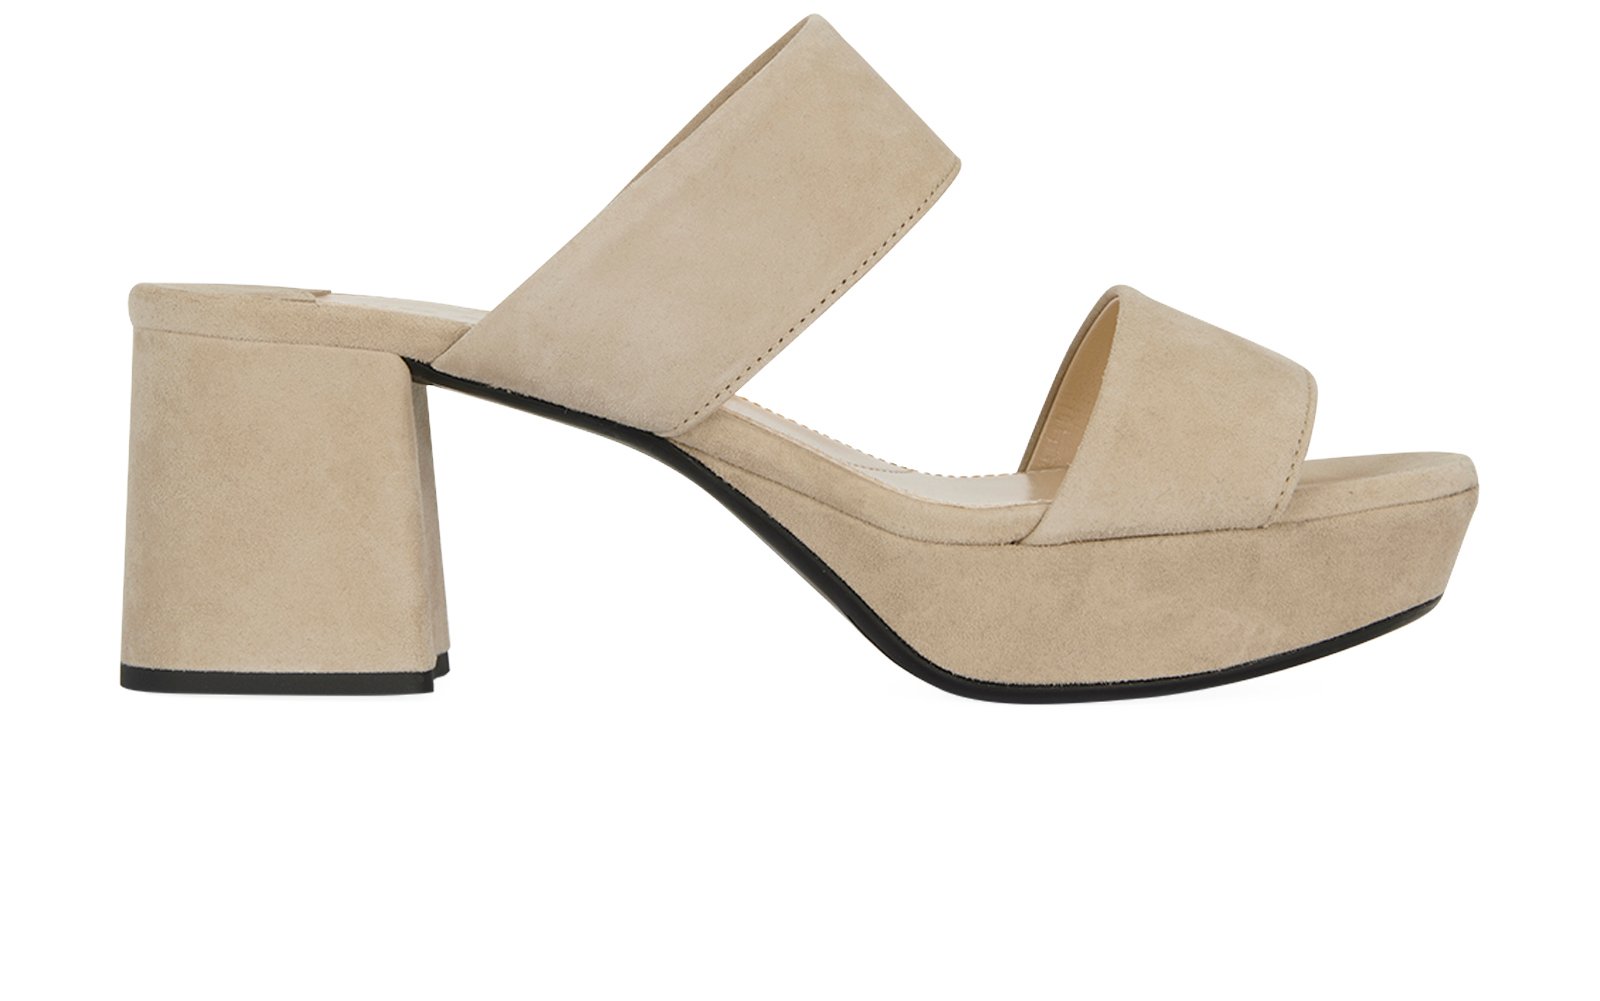 Prada Calzature Donna Sandals, Heels - Designer Exchange | Buy Sell Exchange